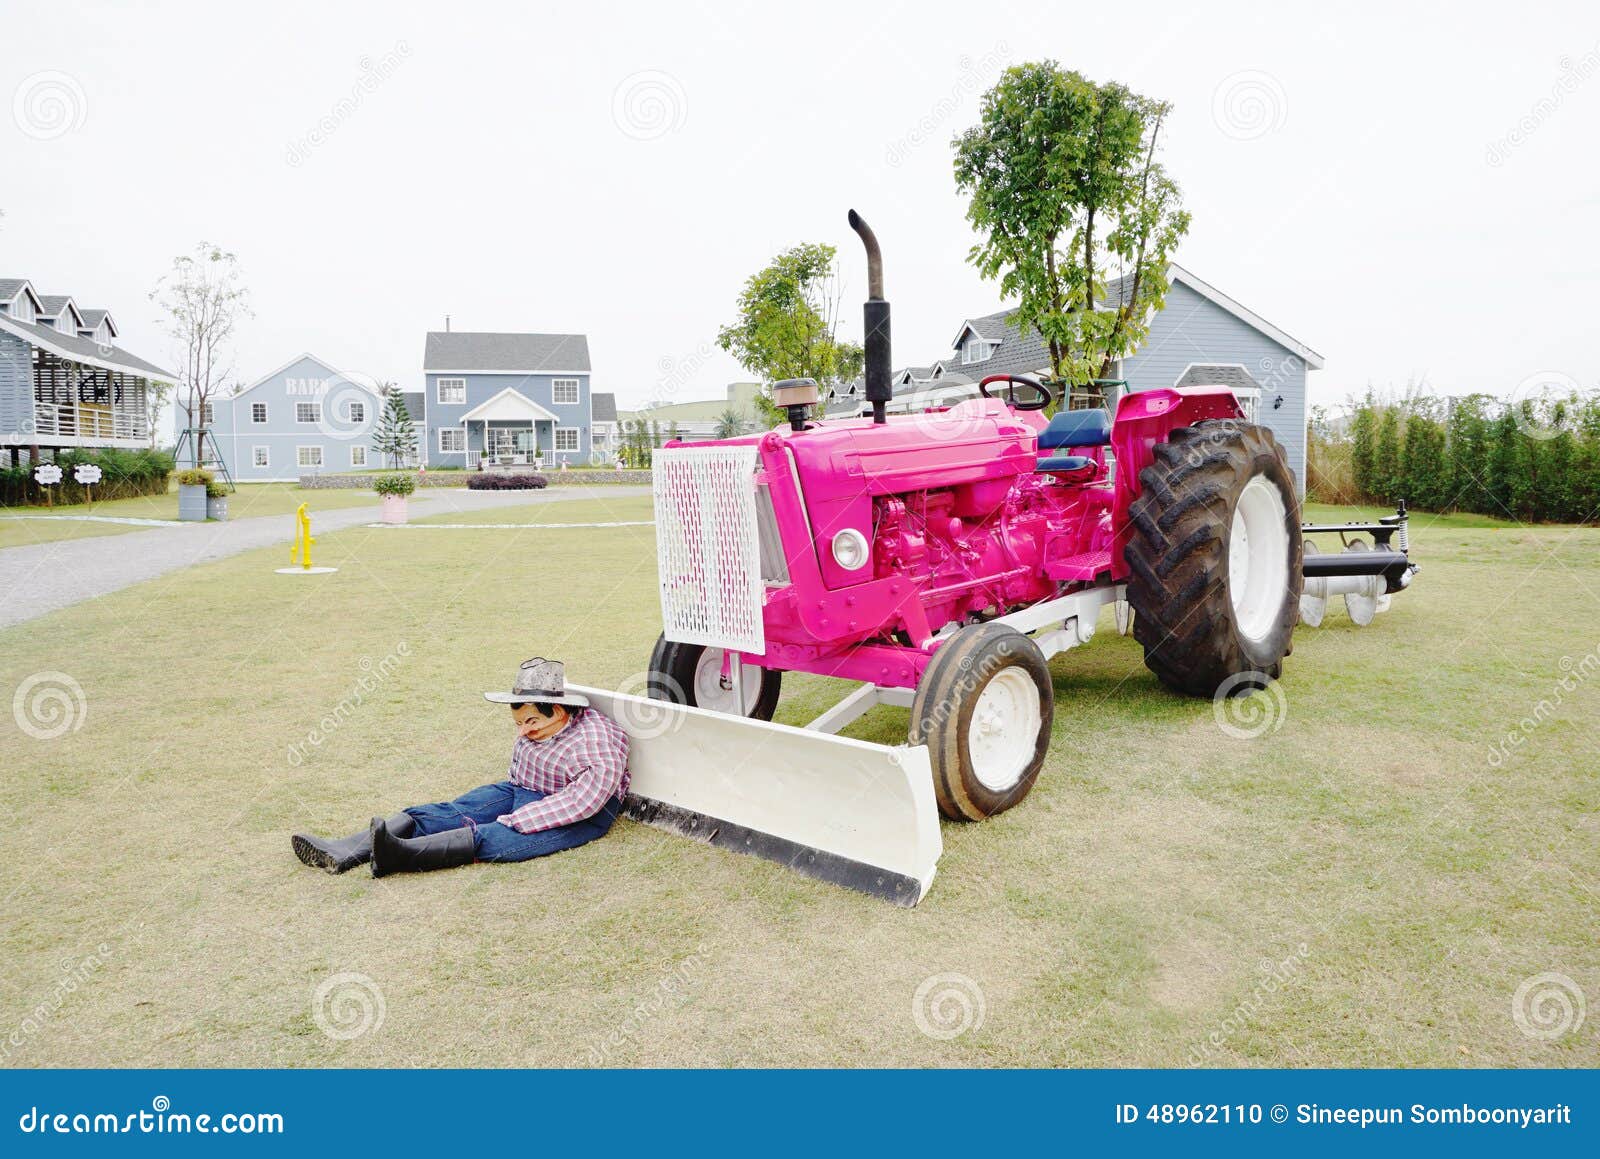 Toyland fricción Desarrollado Tractor de Granja con apertura del capó-disponible en color de rosa, 